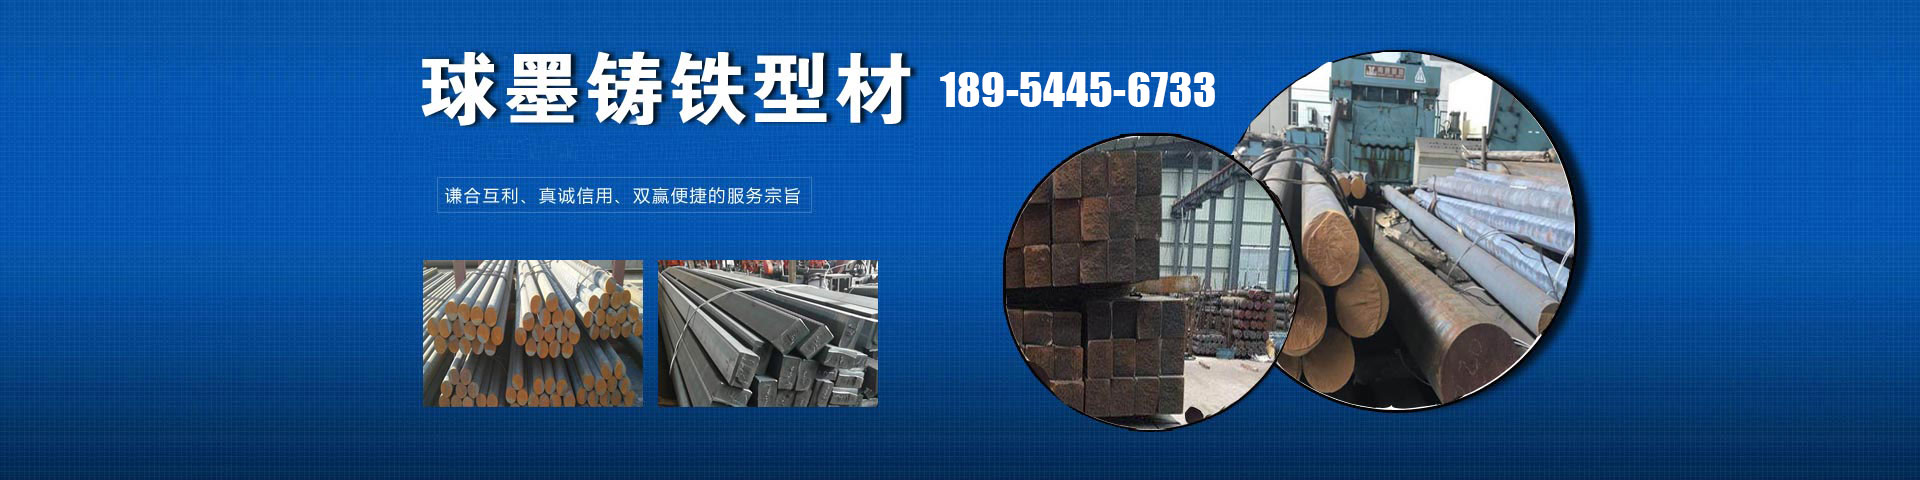 耐磨钢板厂、淄博本地耐磨钢板厂、淄博、淄博耐磨钢板厂